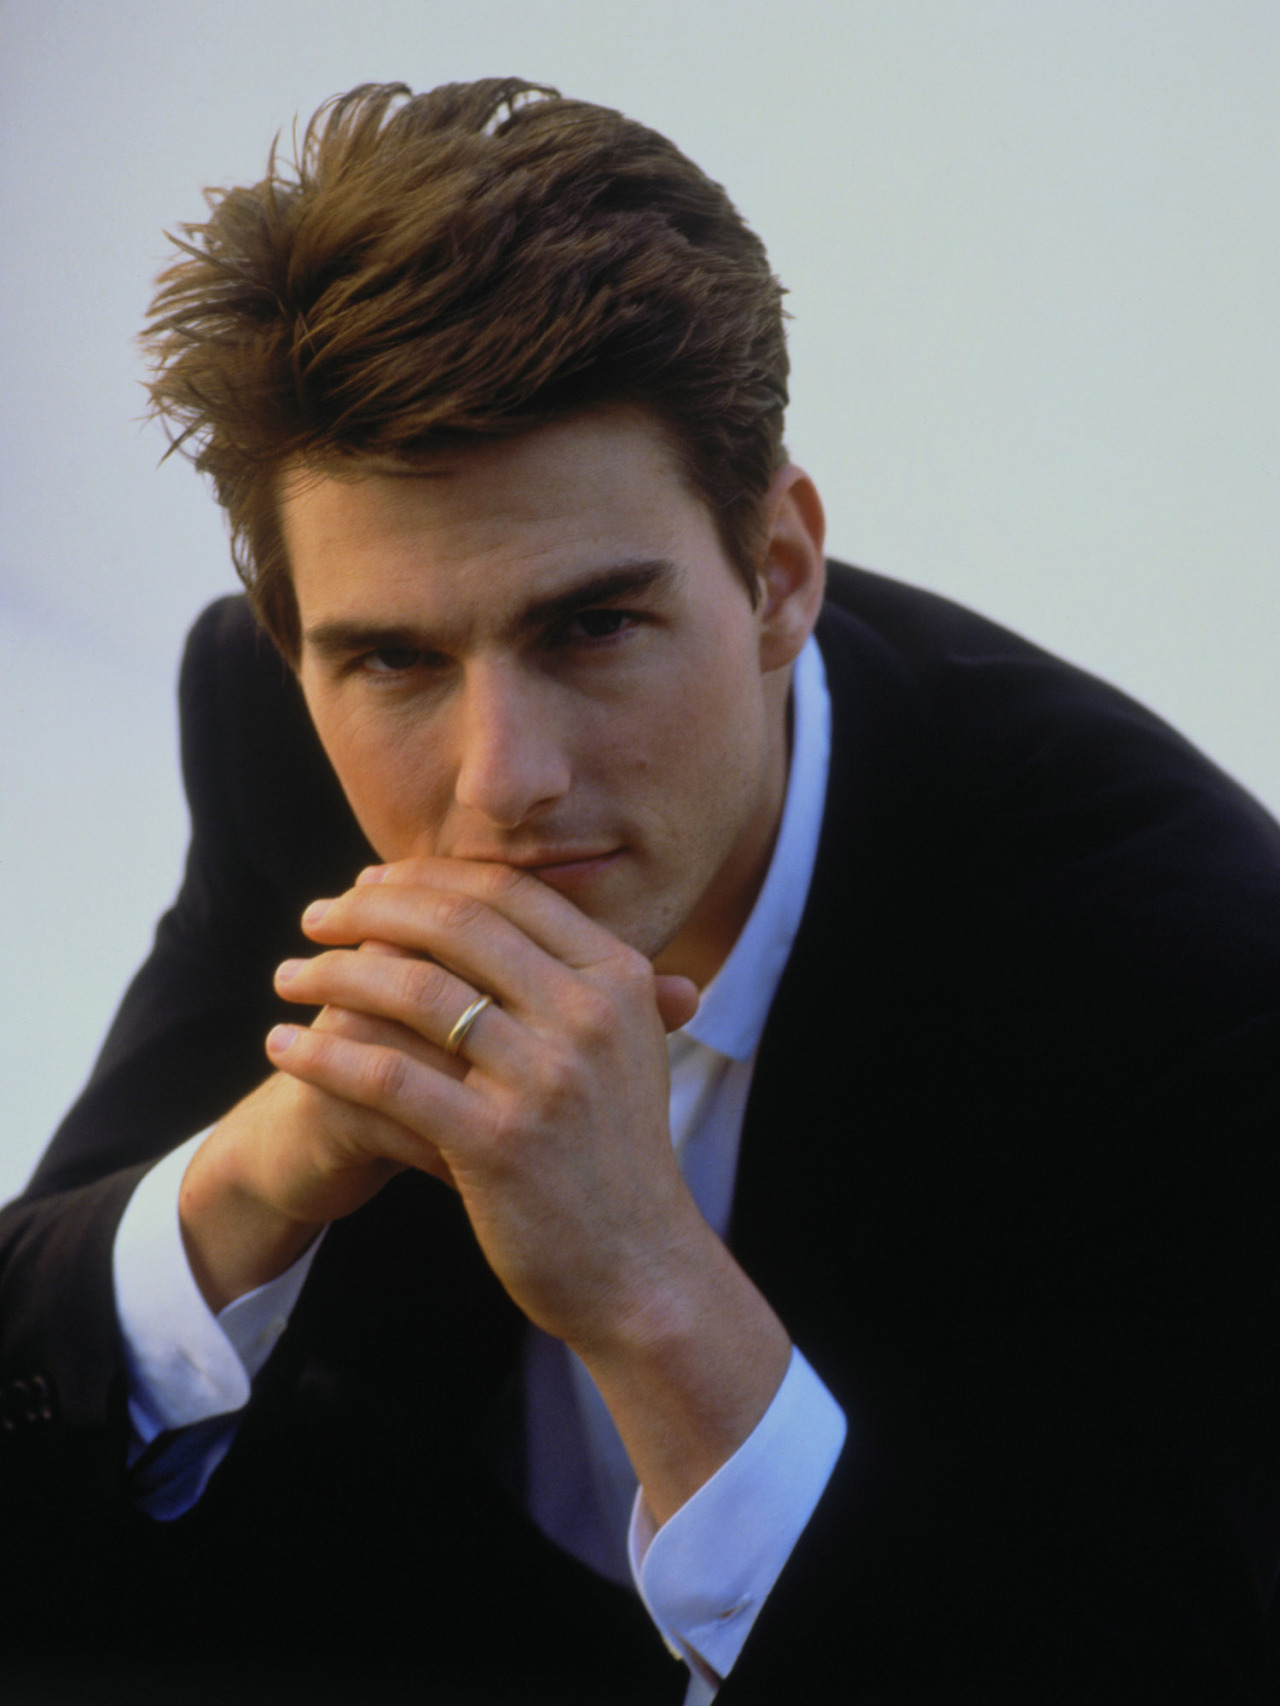 Dàn mỹ nam huyền thoại giờ ra sao: Tom Cruise, Brad Pitt U60 vẫn phong độ, Leonardo bị ngải heo nhập chưa bằng loạt nam thần hói dần đều - Ảnh 25.